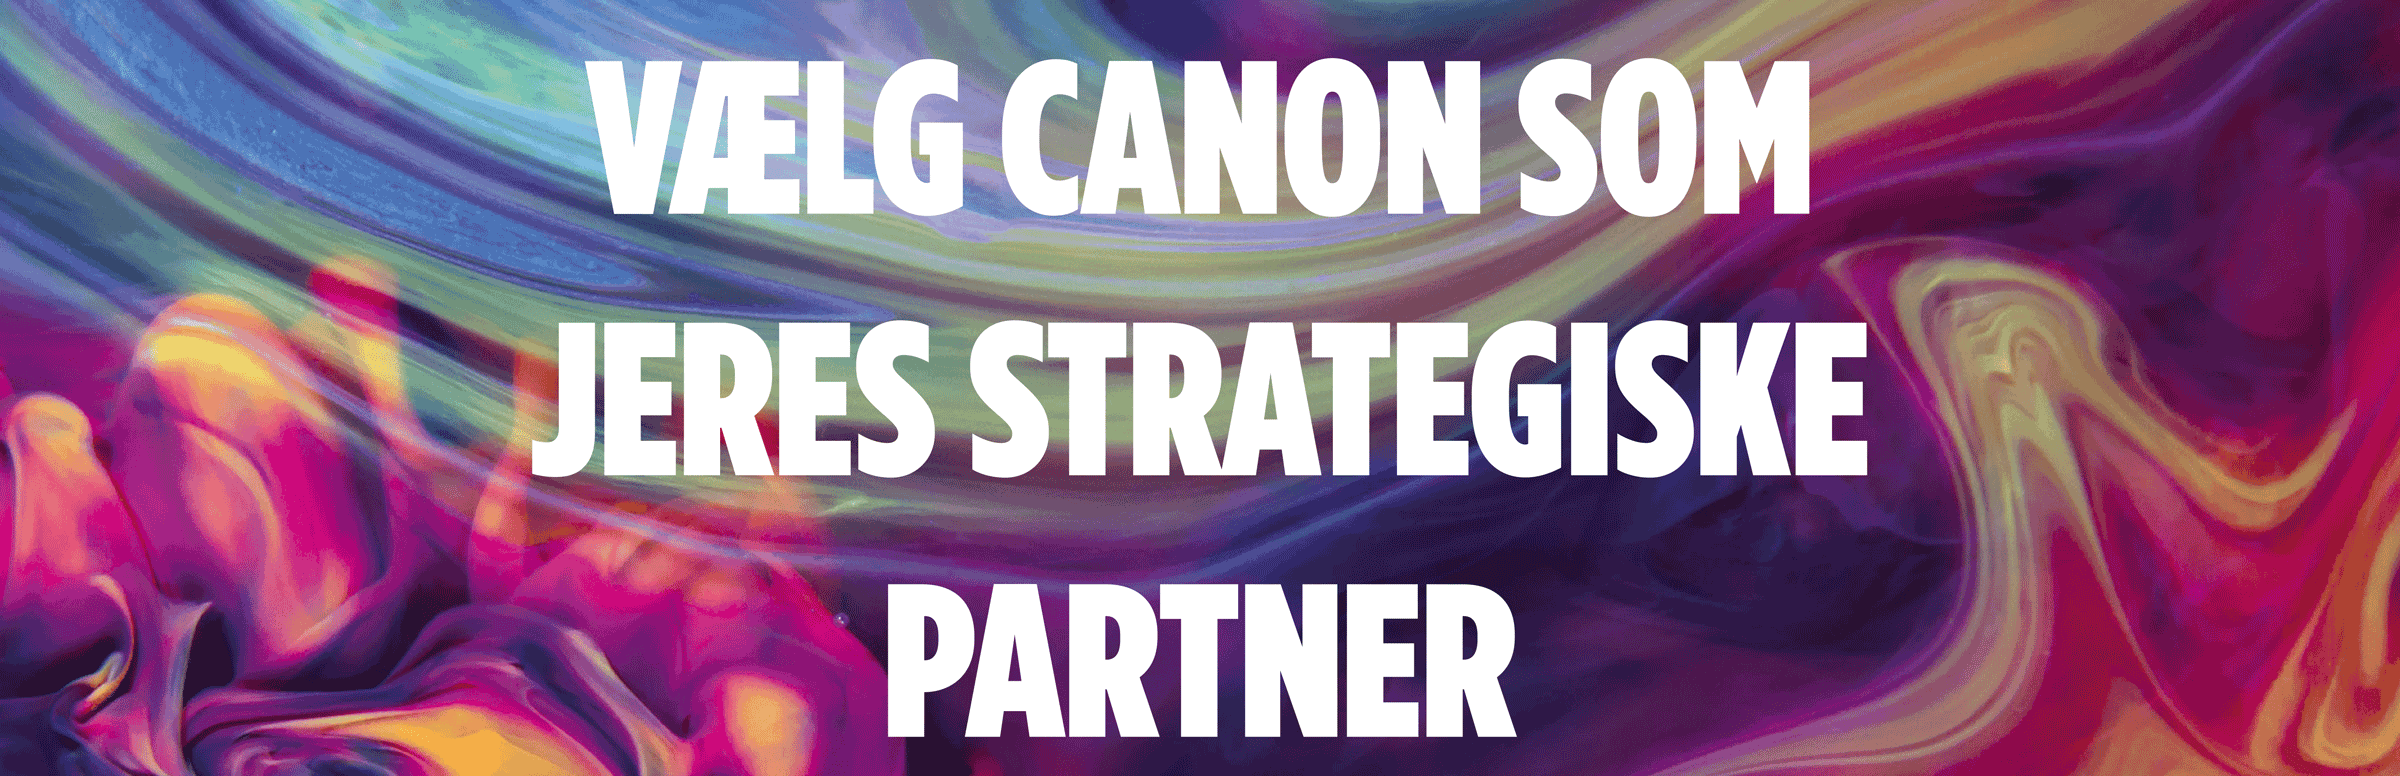 Vælg Canon Som Jeres Strategiske Partner